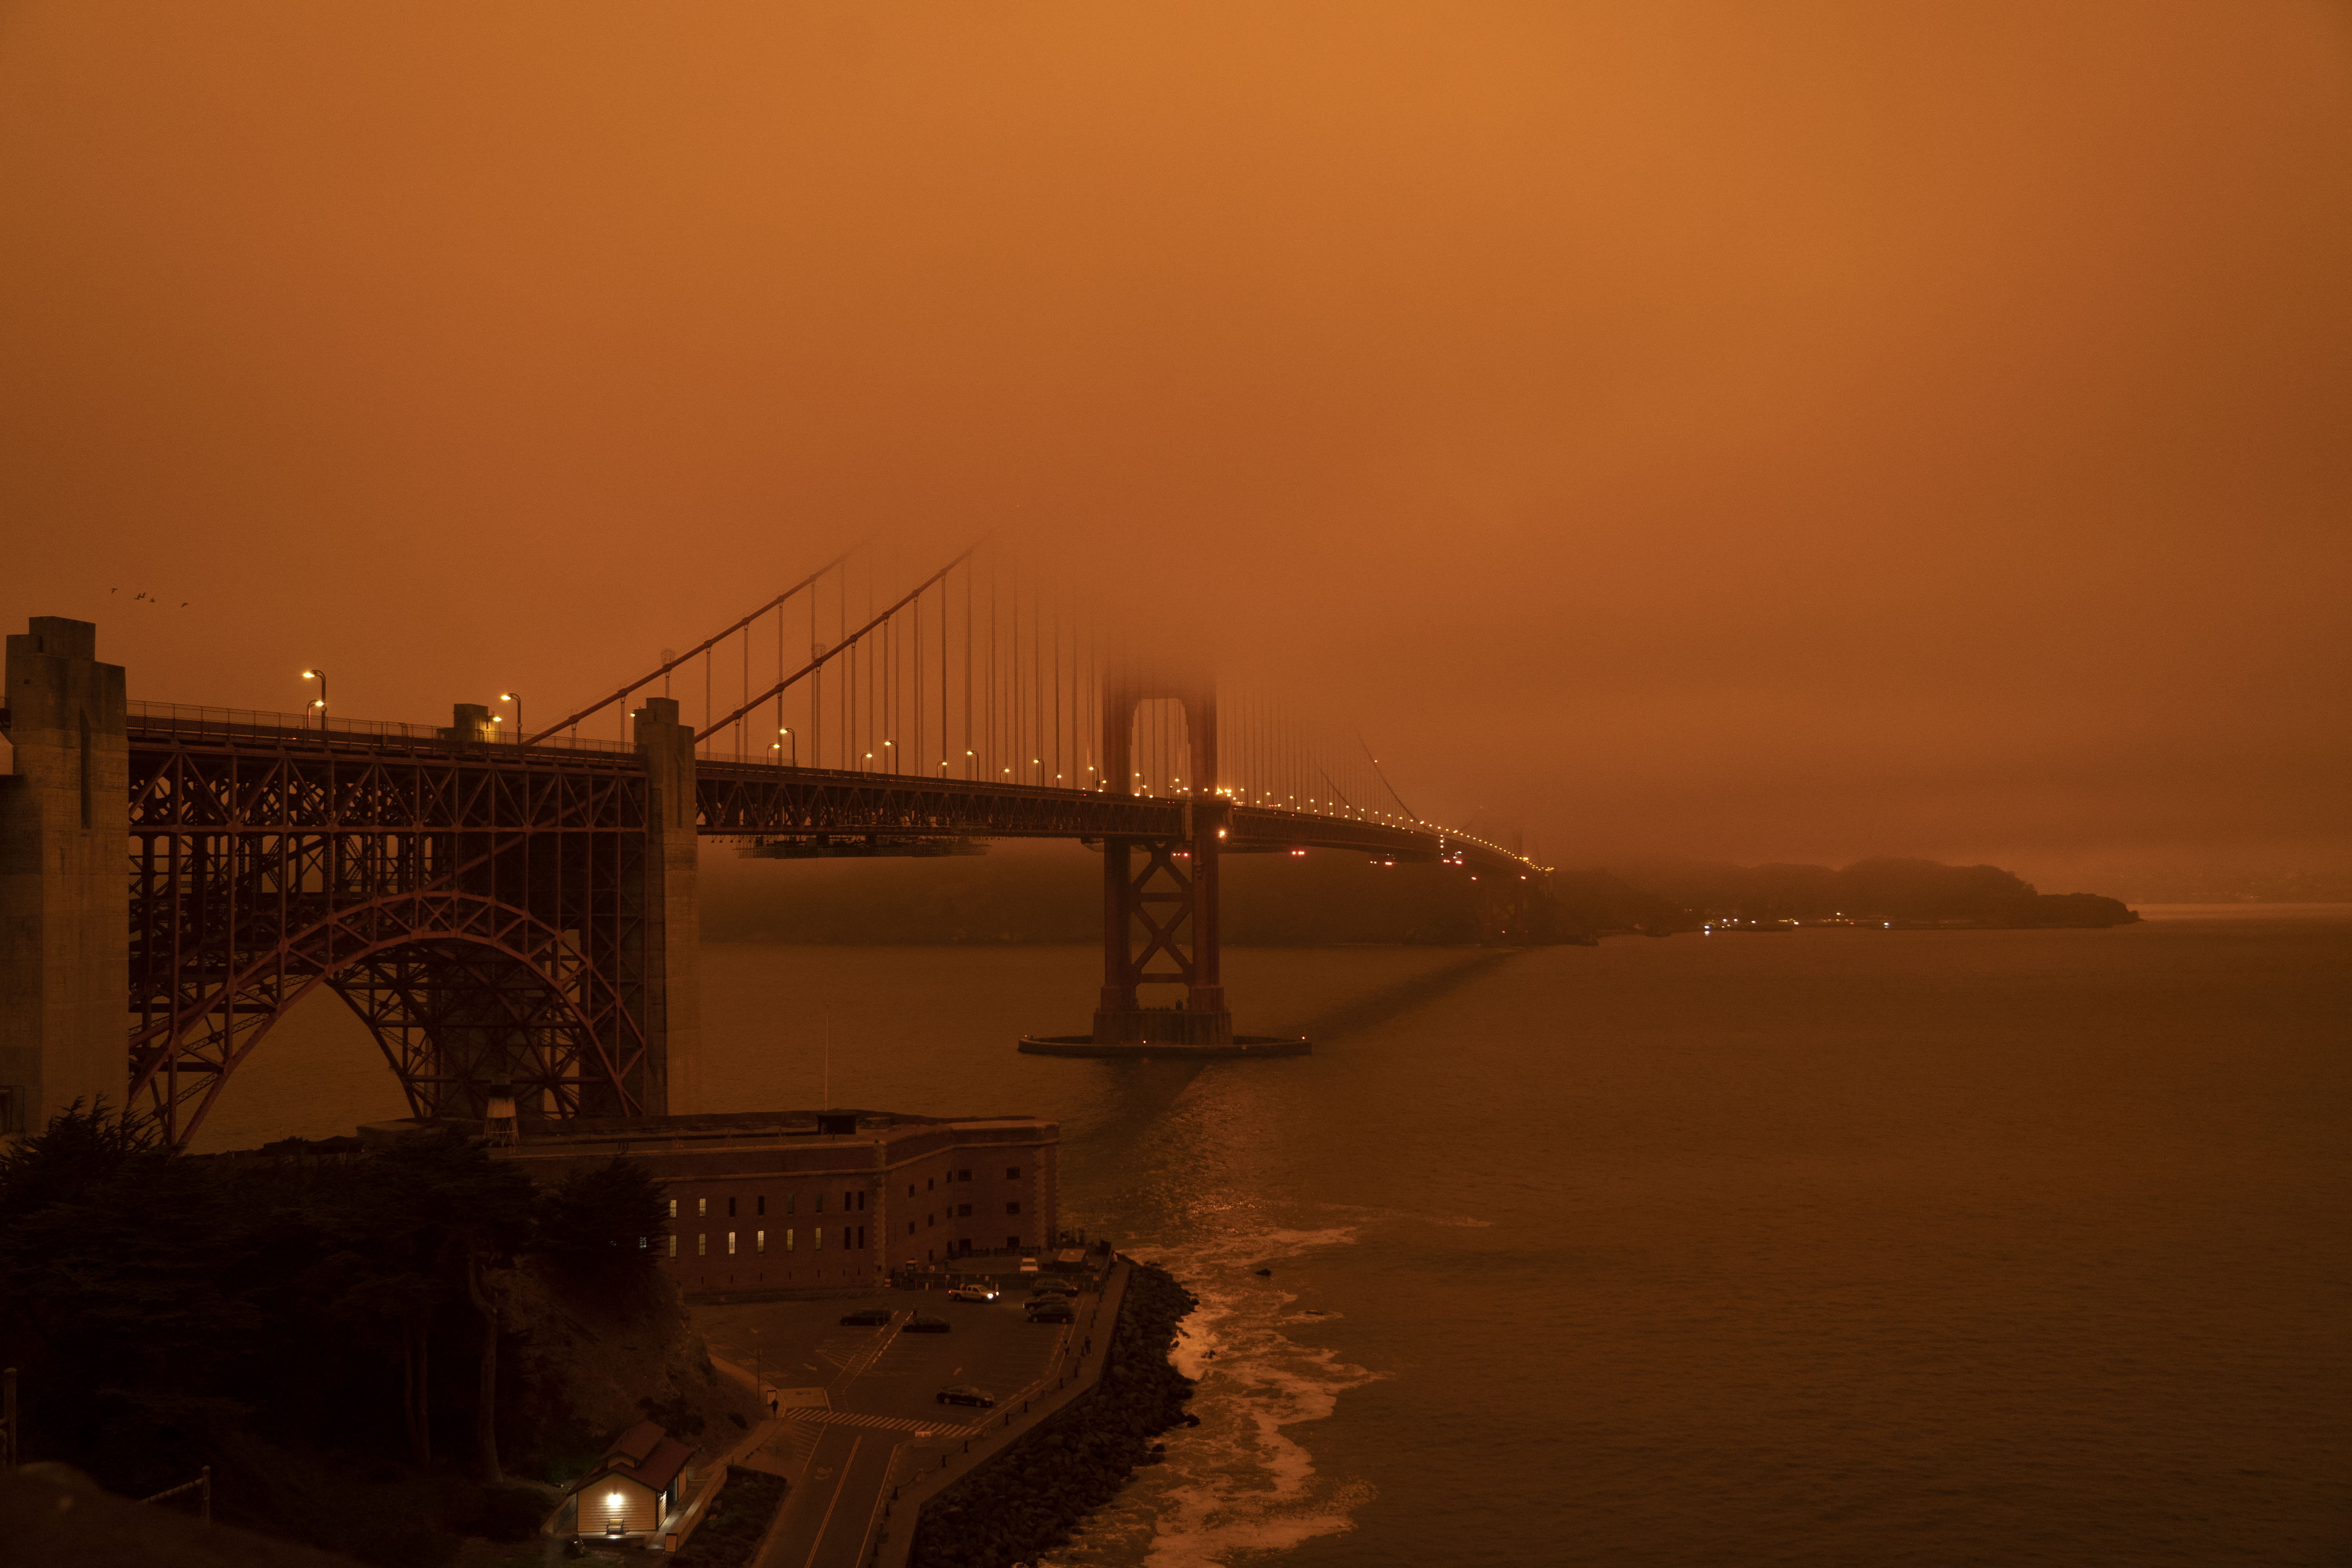 San Francisco legnevezetesebb látványossága, a Golden Gate 2020. szeptember 9-én. A füst miatt nem sok látszik belőle.